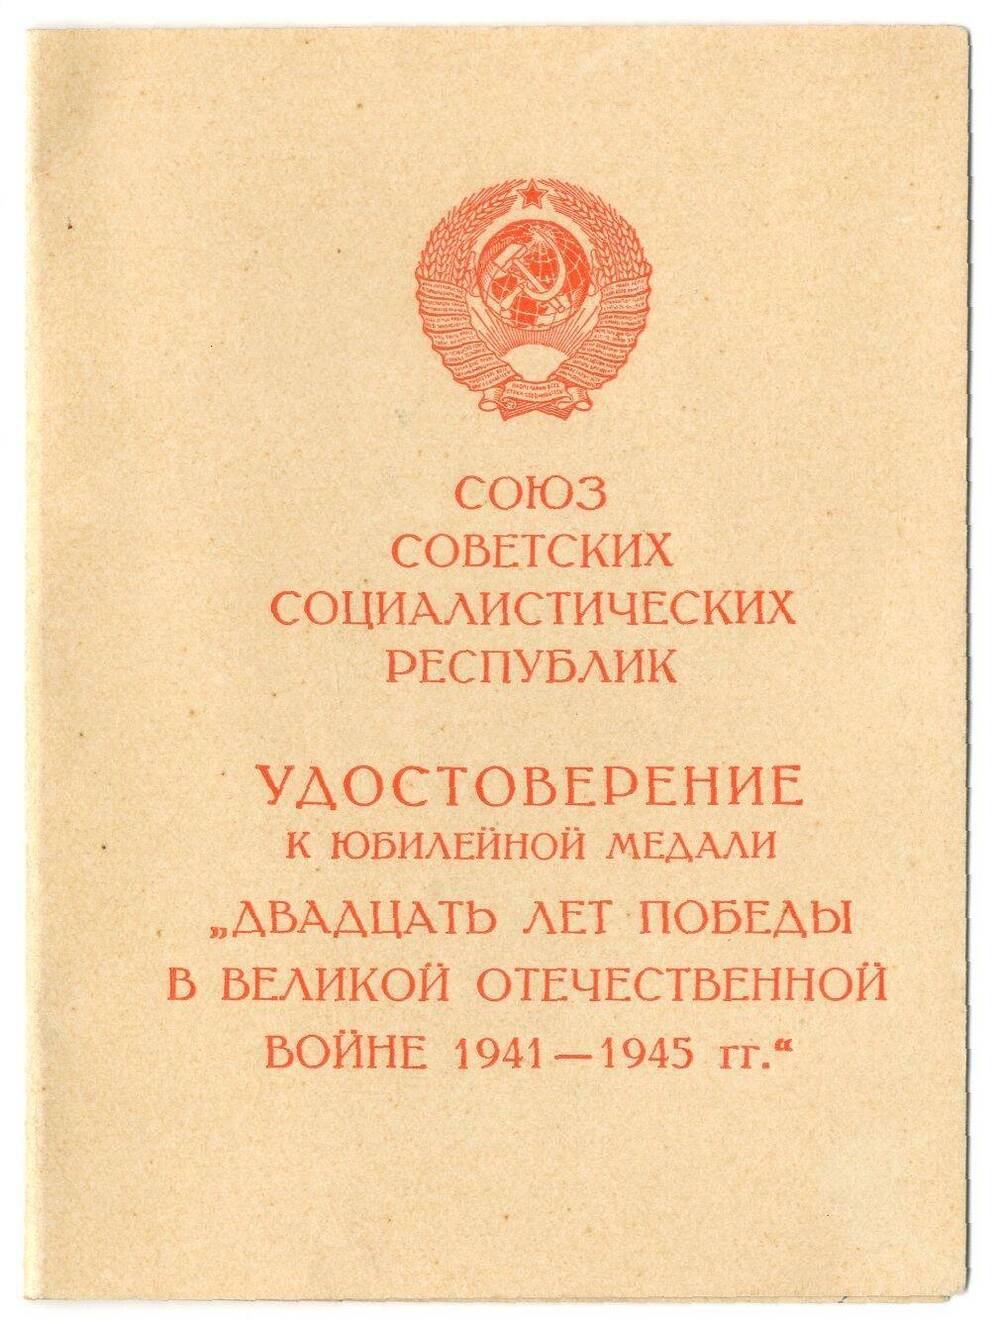 Удостоверение № А 1520244 к юбилейной медали Двадцать лет победы в Великой Отечественной войне 1941-1945 гг. С.М. Костенко